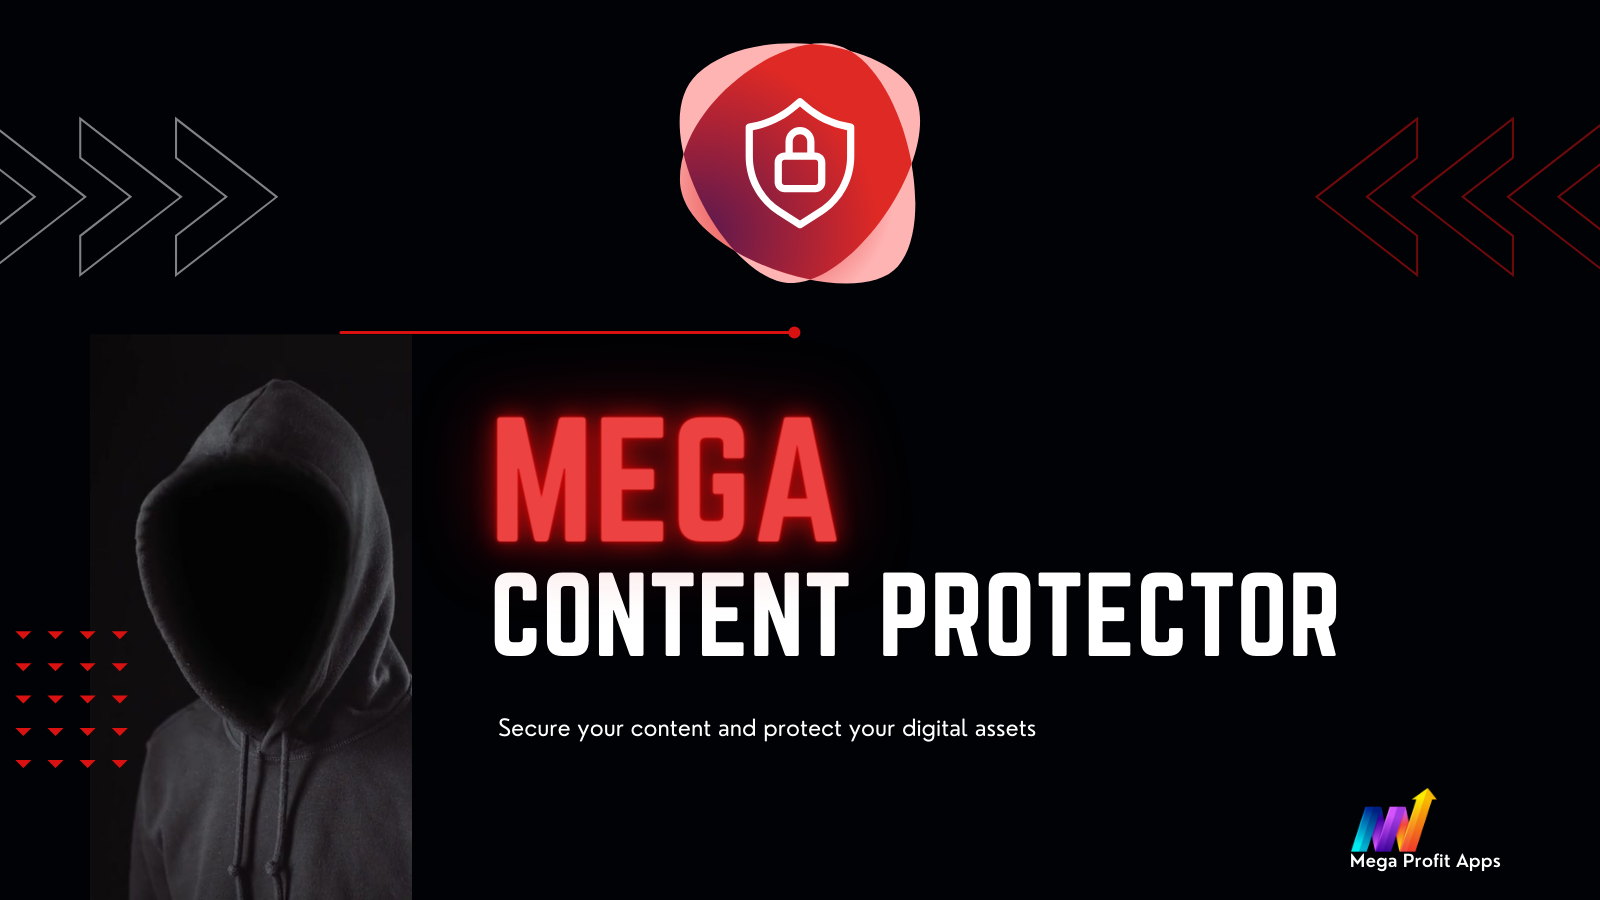 Mega Content Protector - Beskyt dit hårde arbejde og kreativitet